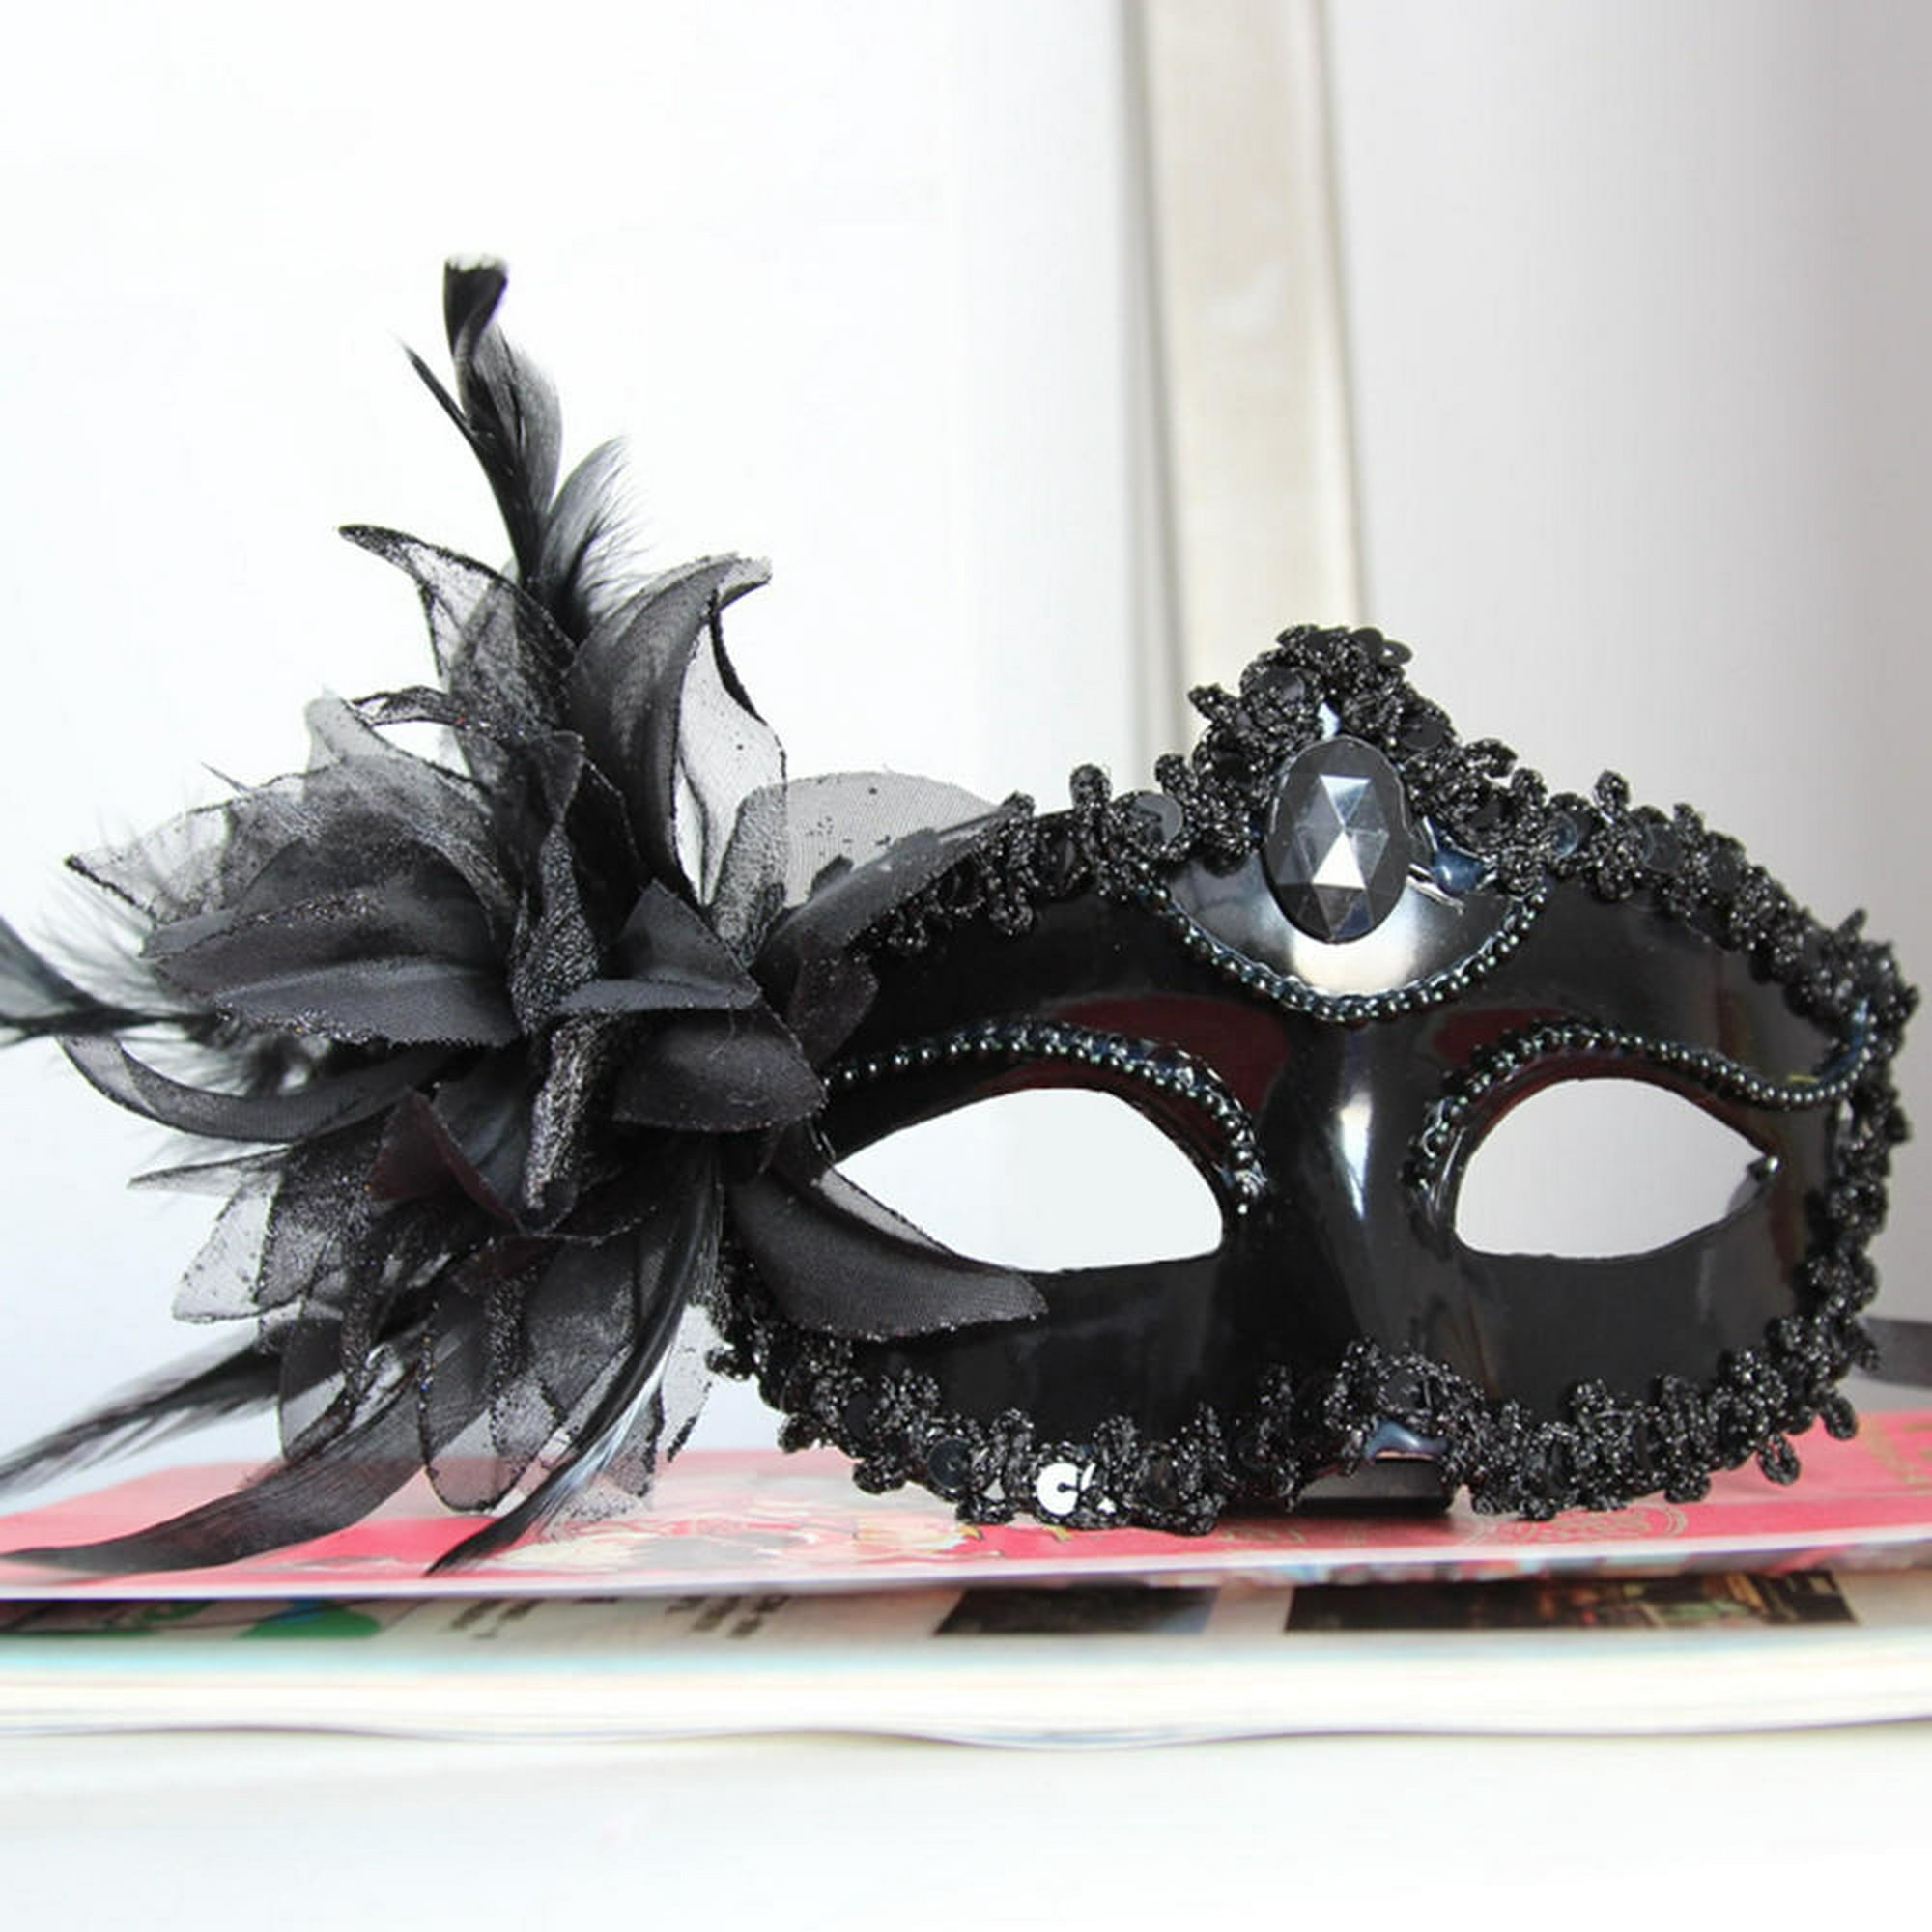 Máscara de lobo de Halloween, máscara de media cara de hombre lobo, máscara  de animal para mascarada, máscara de Halloween y cosplay (negro dorado